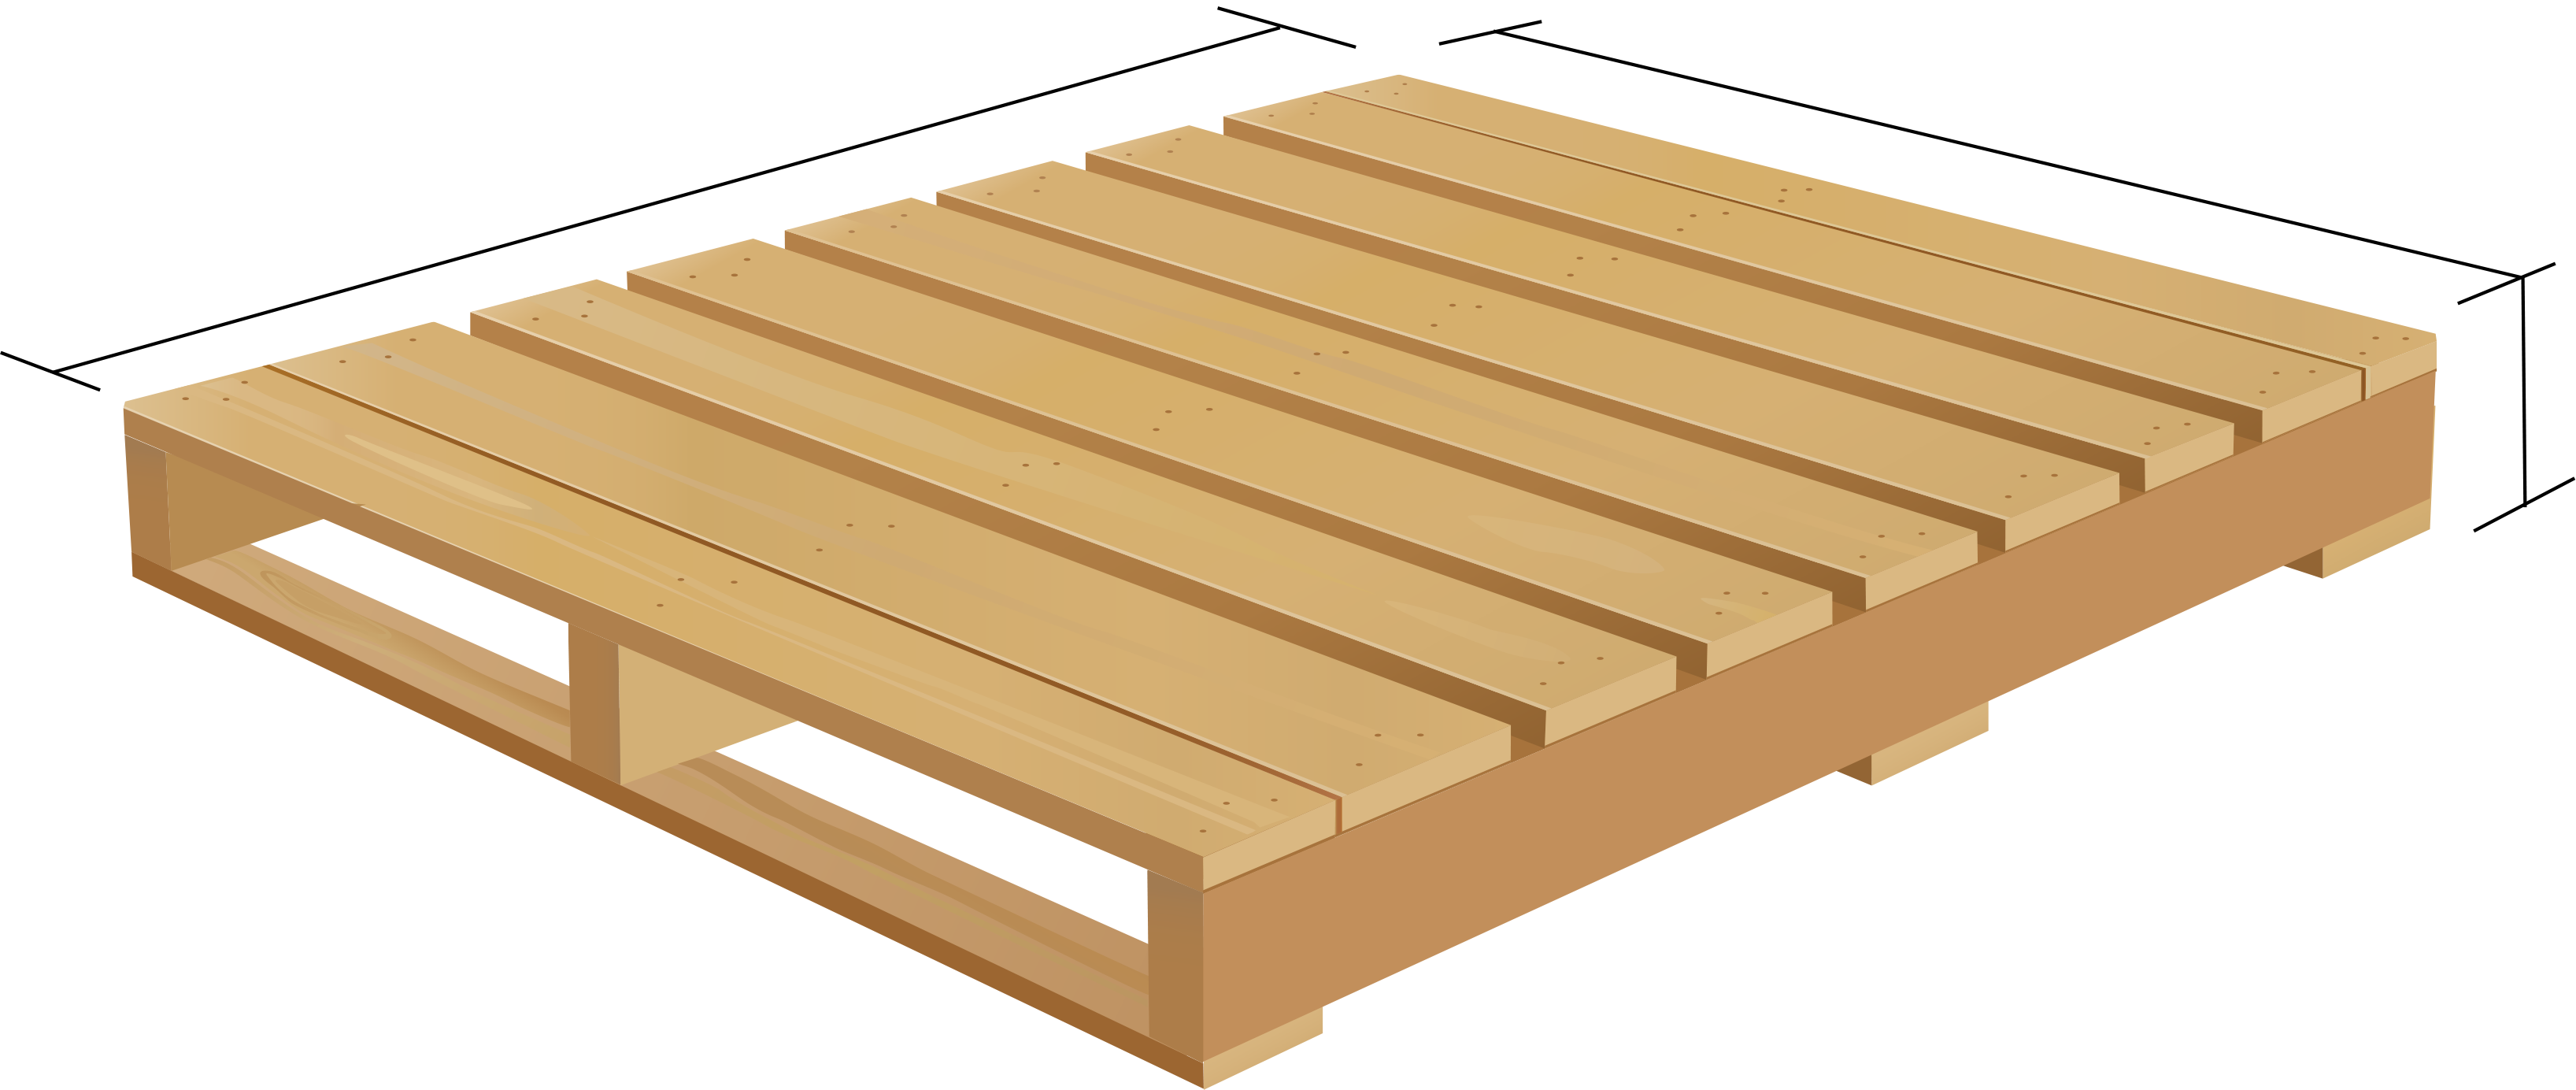 山室木材工業株式会社 | 木製パレット・輸出用木箱の製造・販売から 